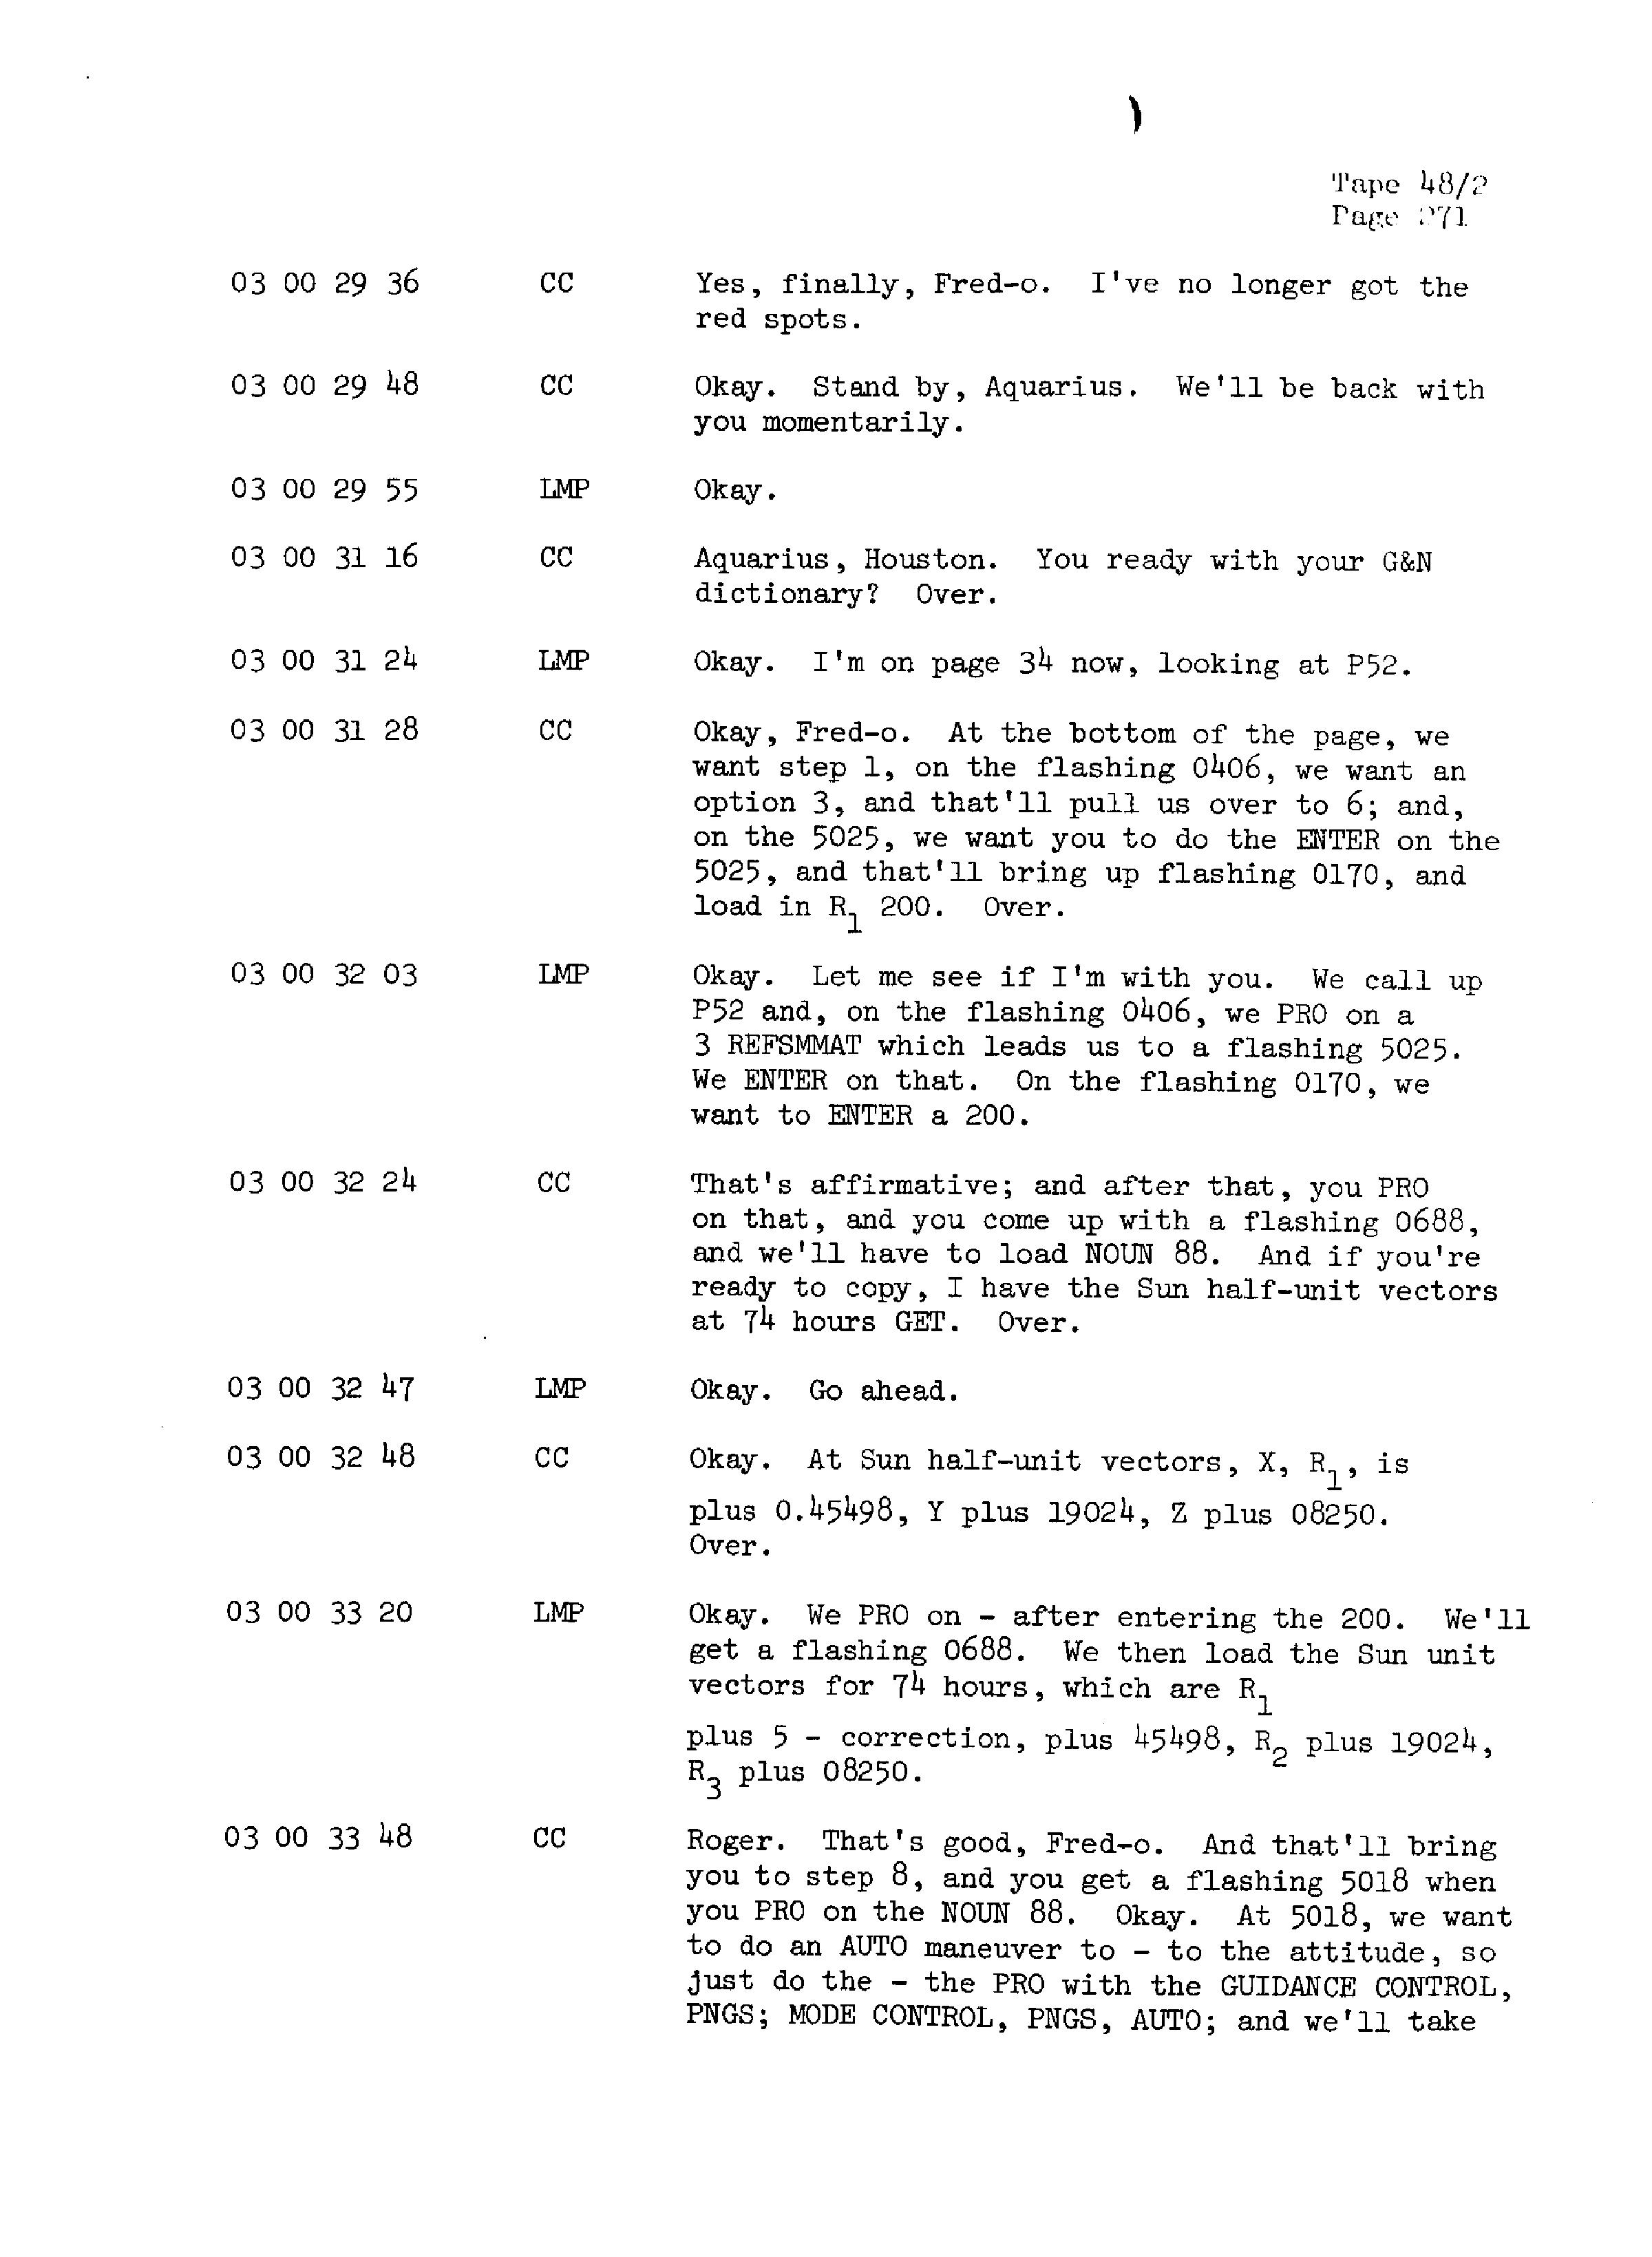 Page 278 of Apollo 13’s original transcript